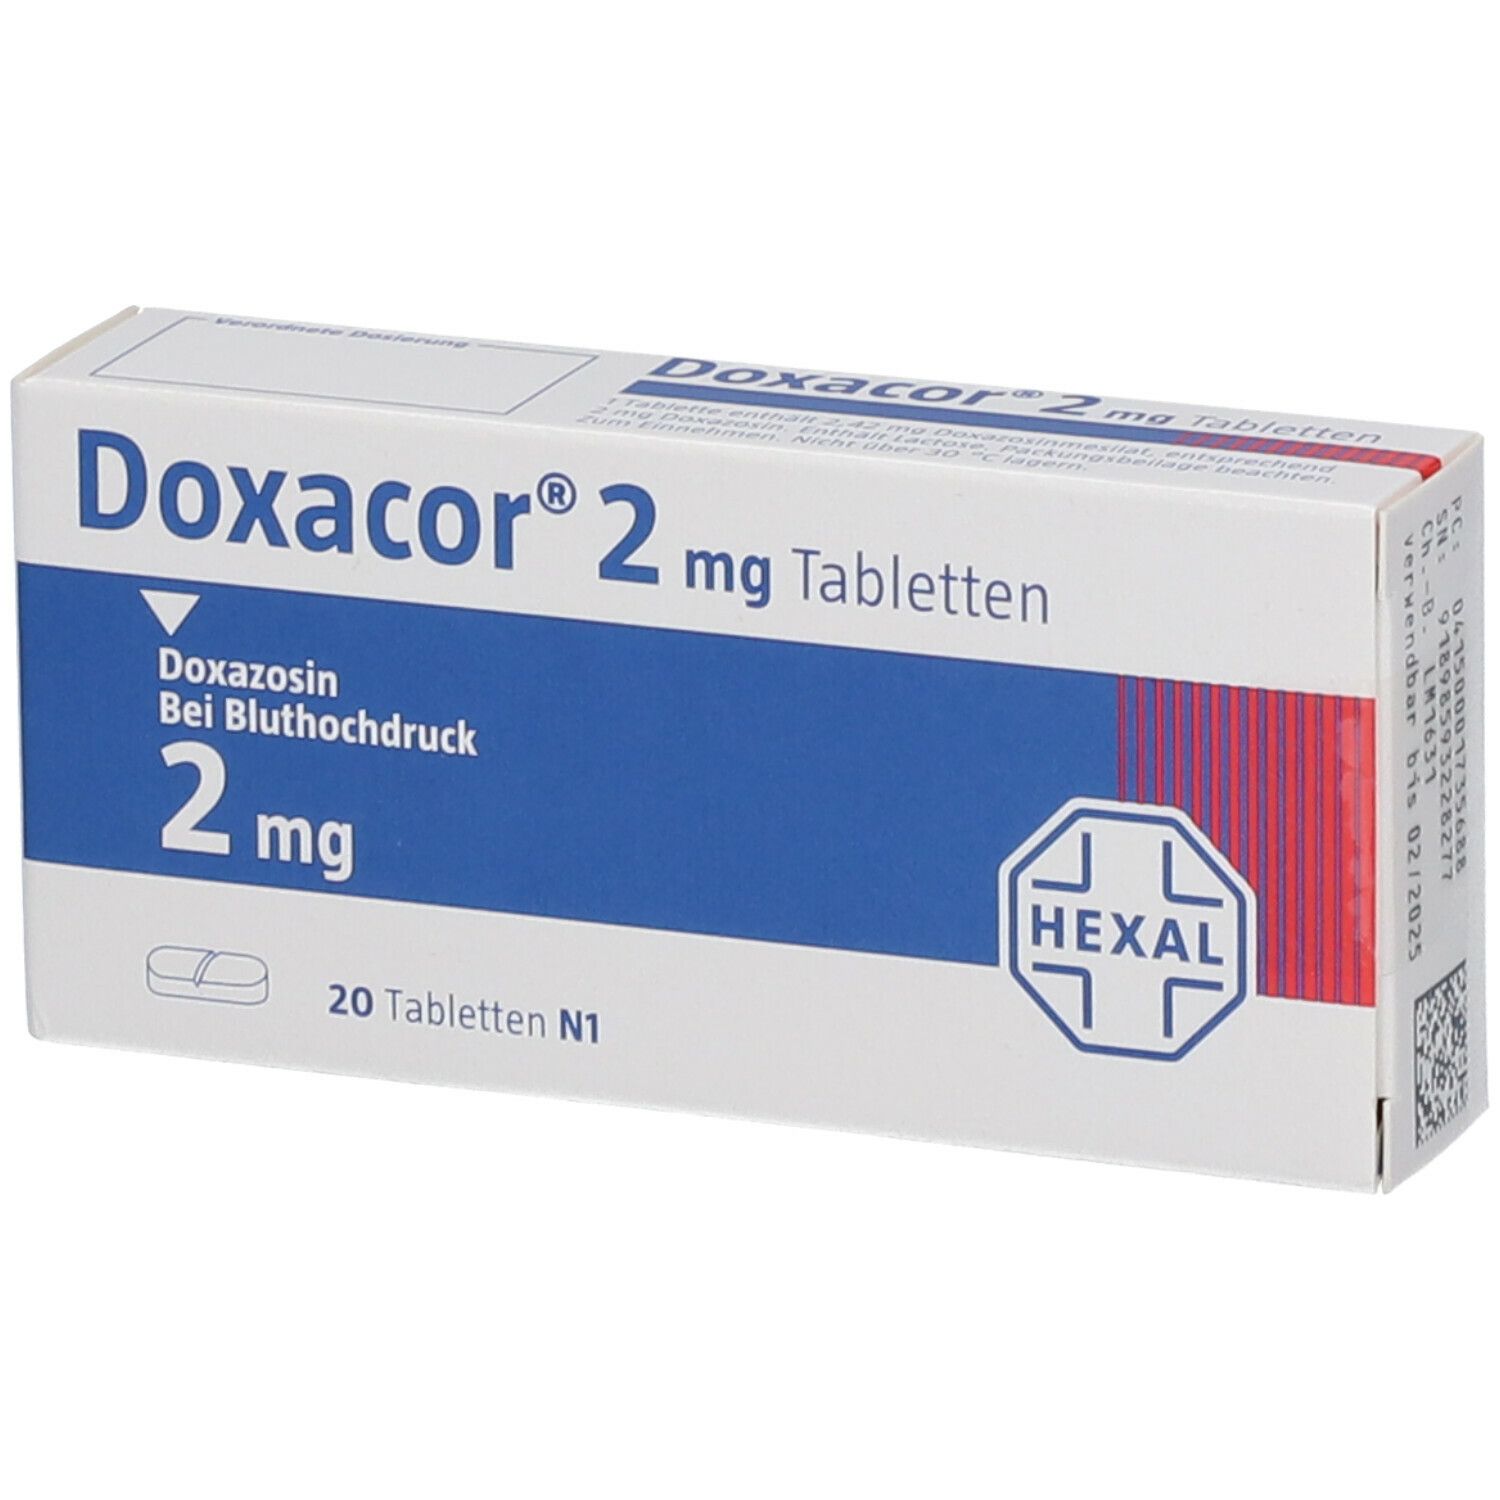 Doxacor® 2 mg